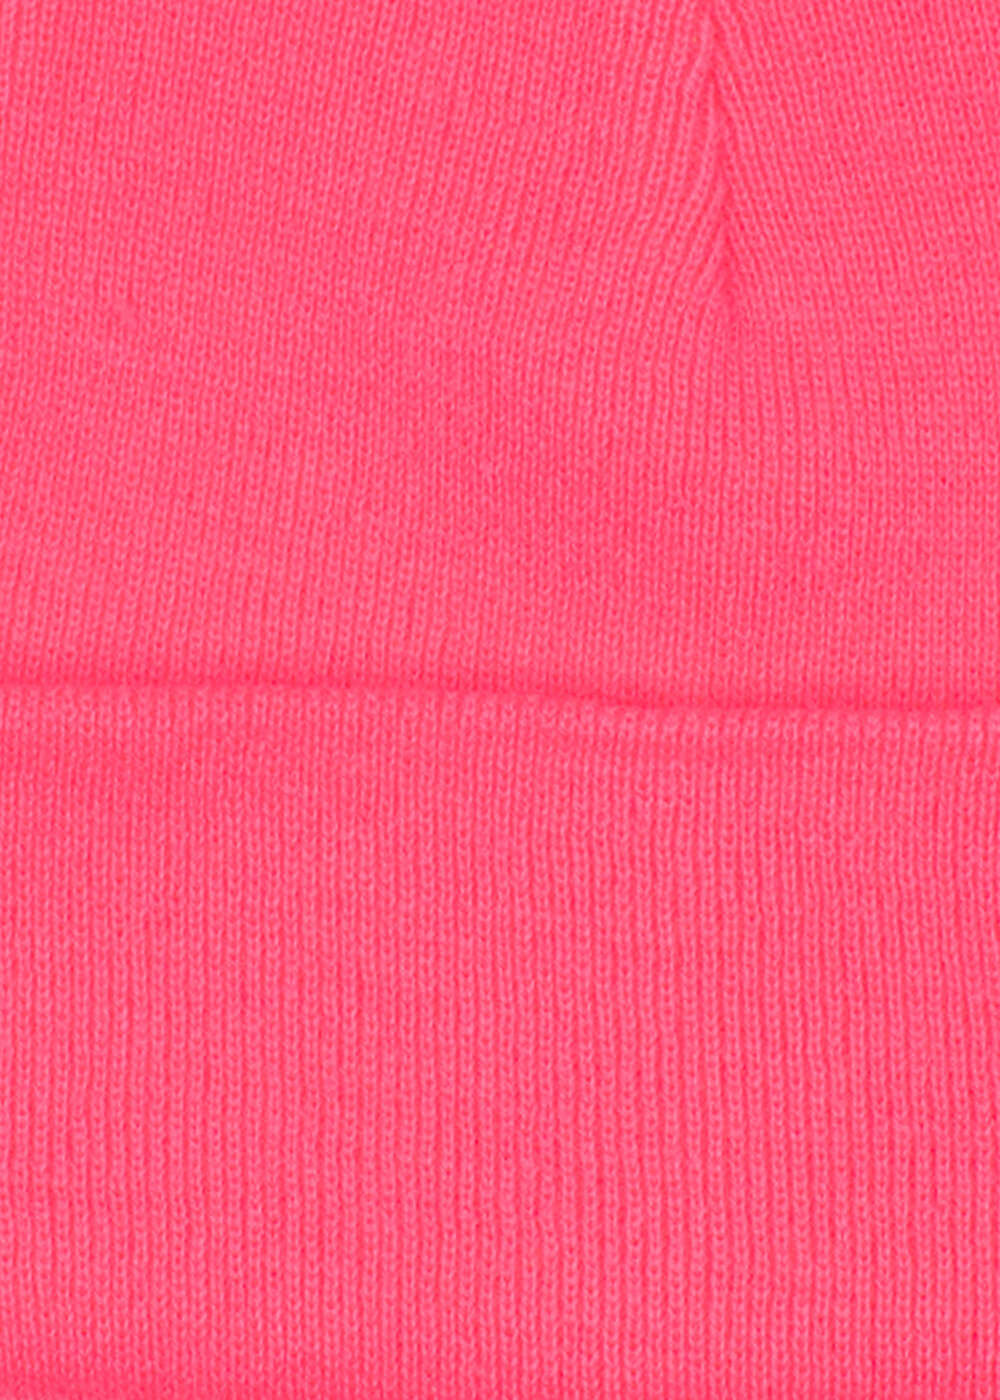 Beanie Neon Pink